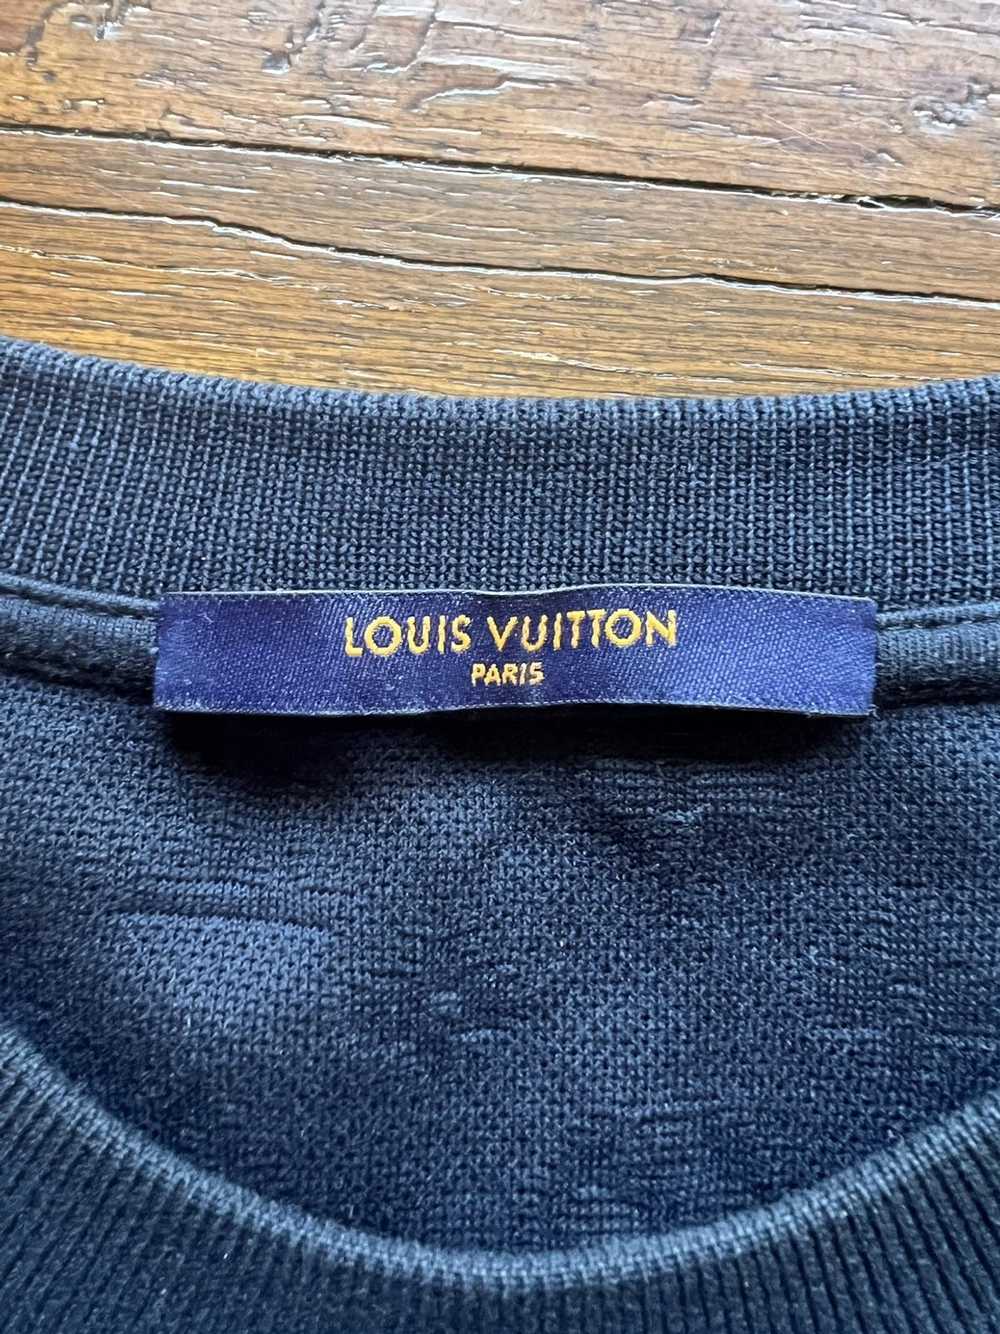 Louis Vuitton LV Signature Monogram 3D Cotton Micro-Loose Pocket for Men Navy 1A7Xrr